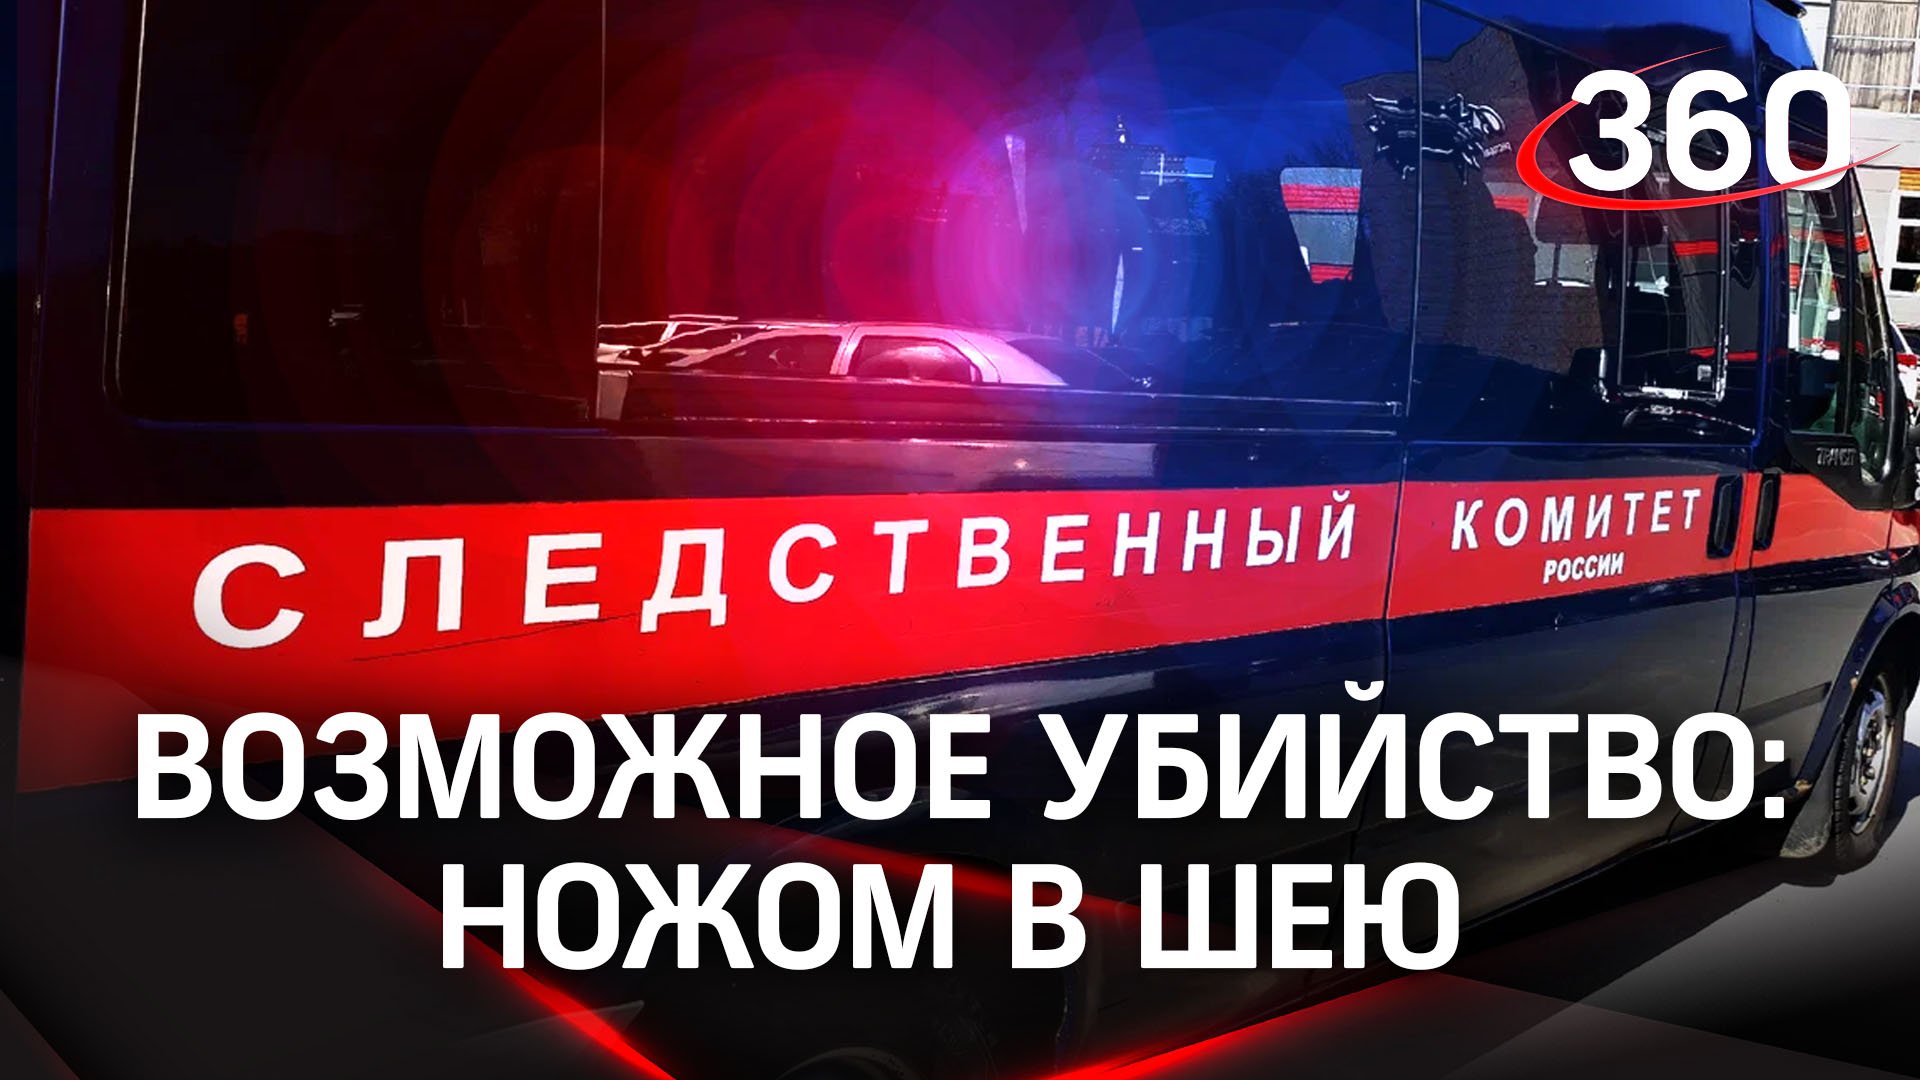 Ножом в шею: отца подозревают в убийстве 10-летней дочери в Челябинске